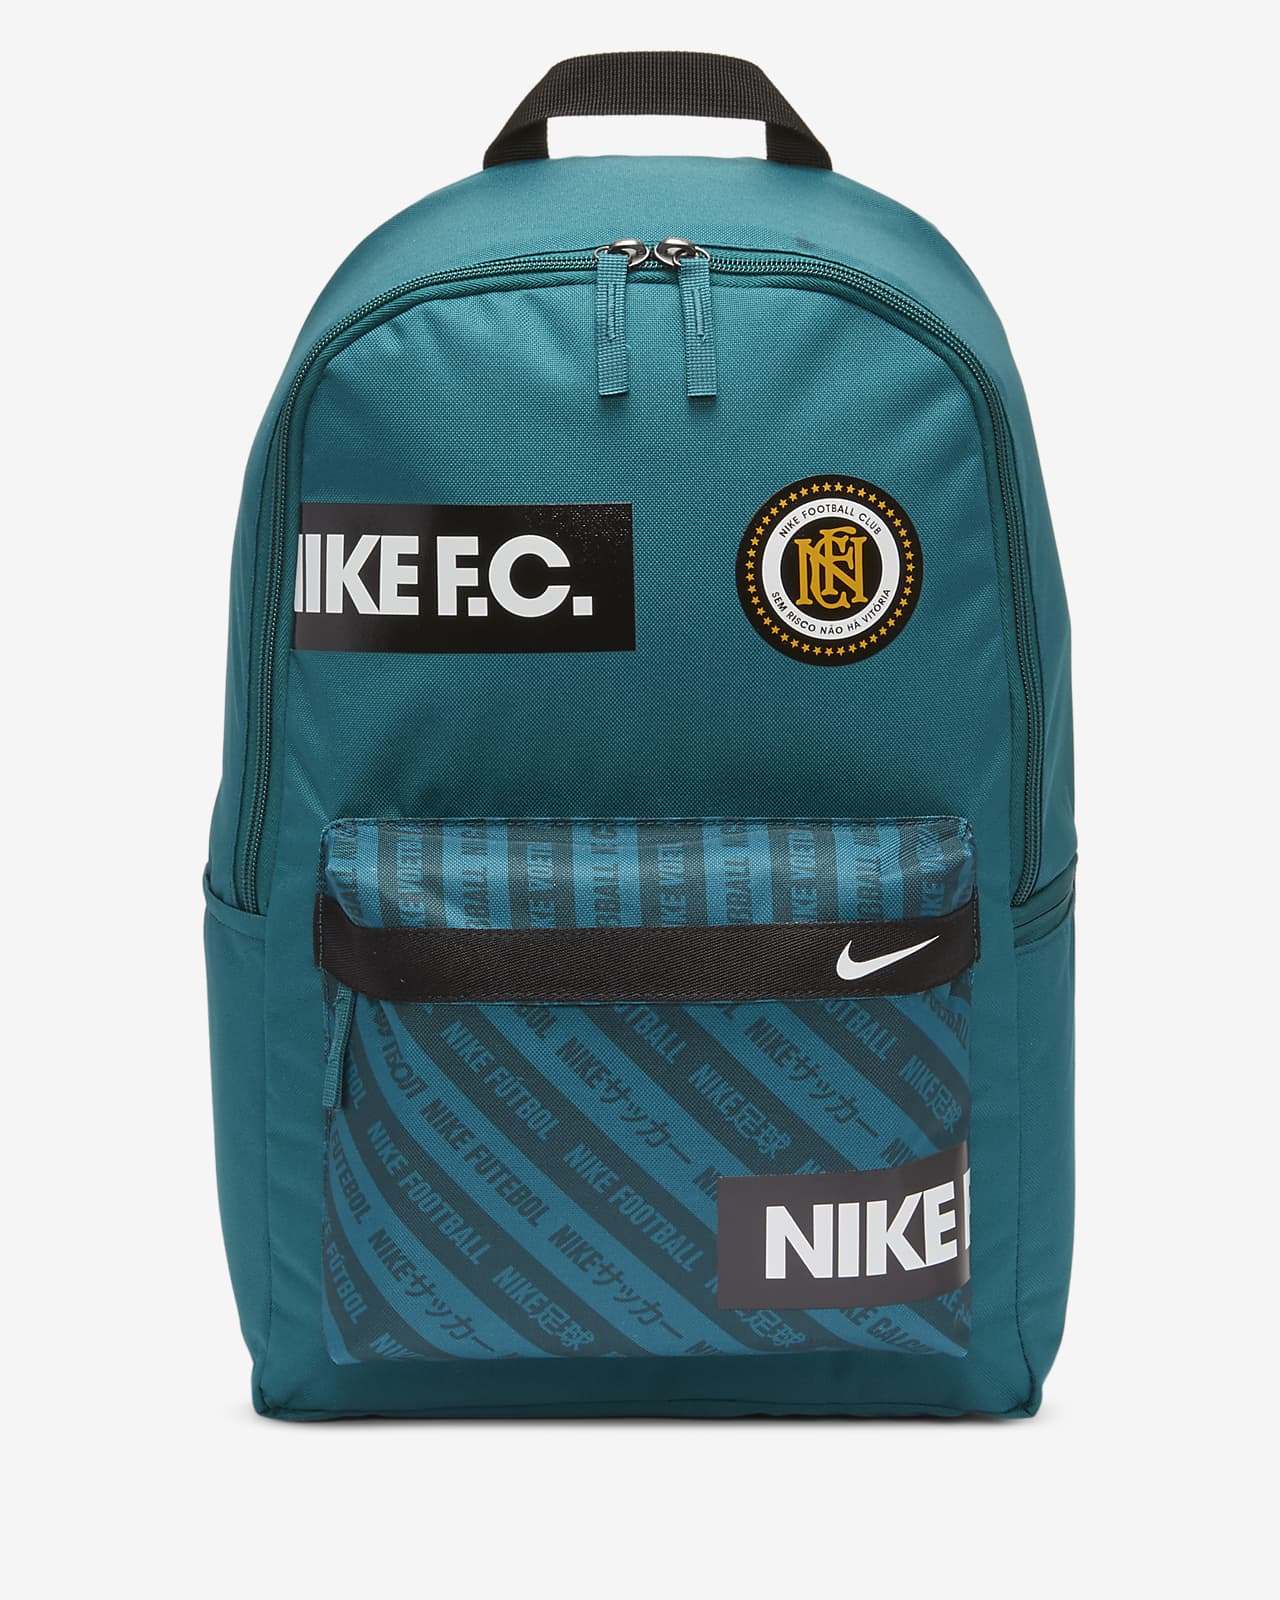 nike elite soccer backpack